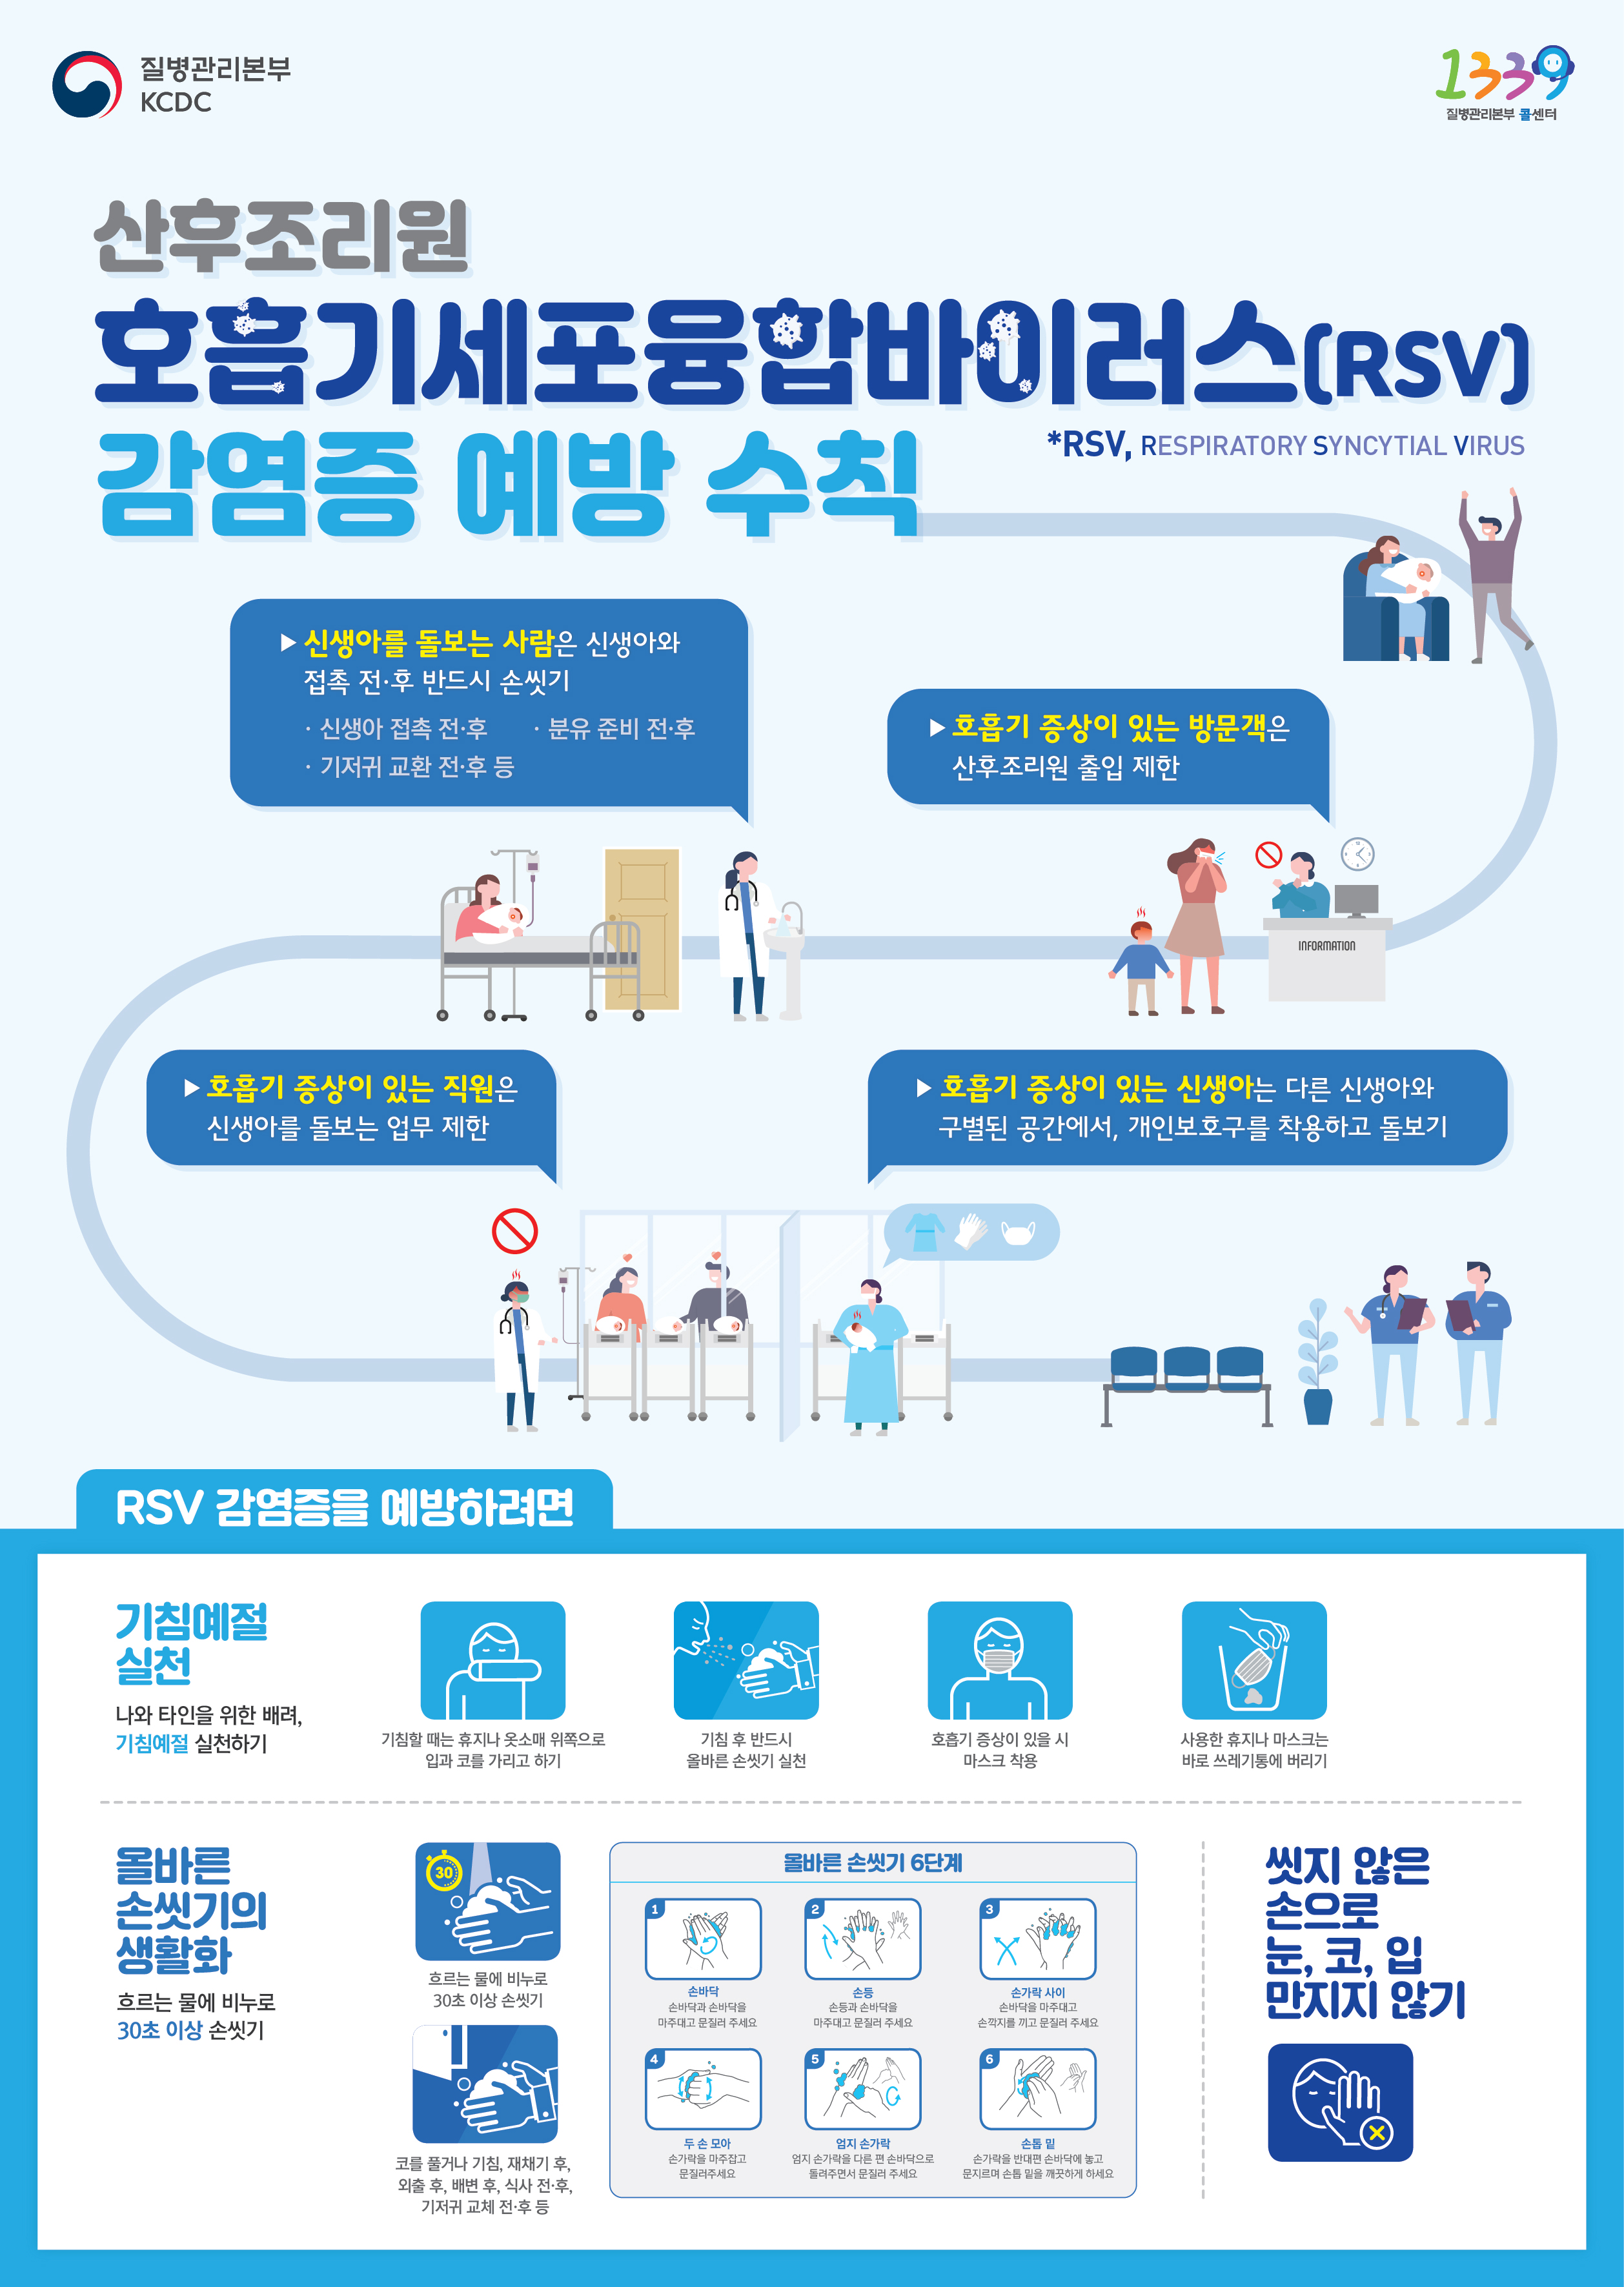 대구광역시 감염병관리지원단 홍보자료